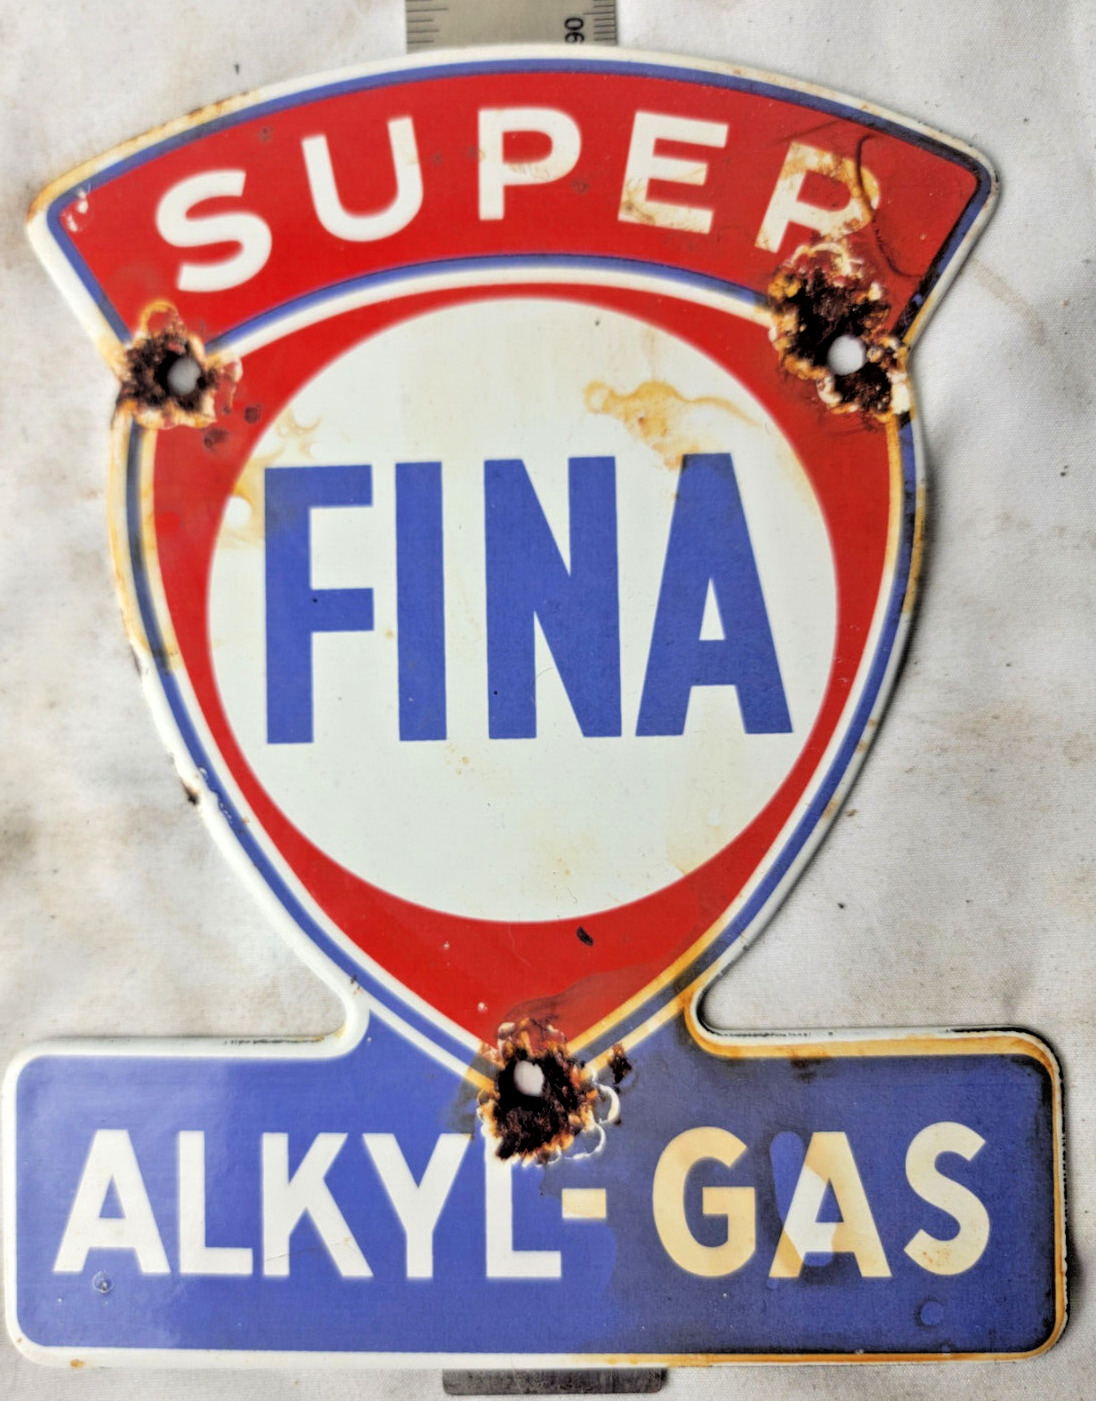 VINTAGE SUPER FINA Alkyl-GAS PORCELAIN SIGN PUMP PLATE GAS STATION OIL